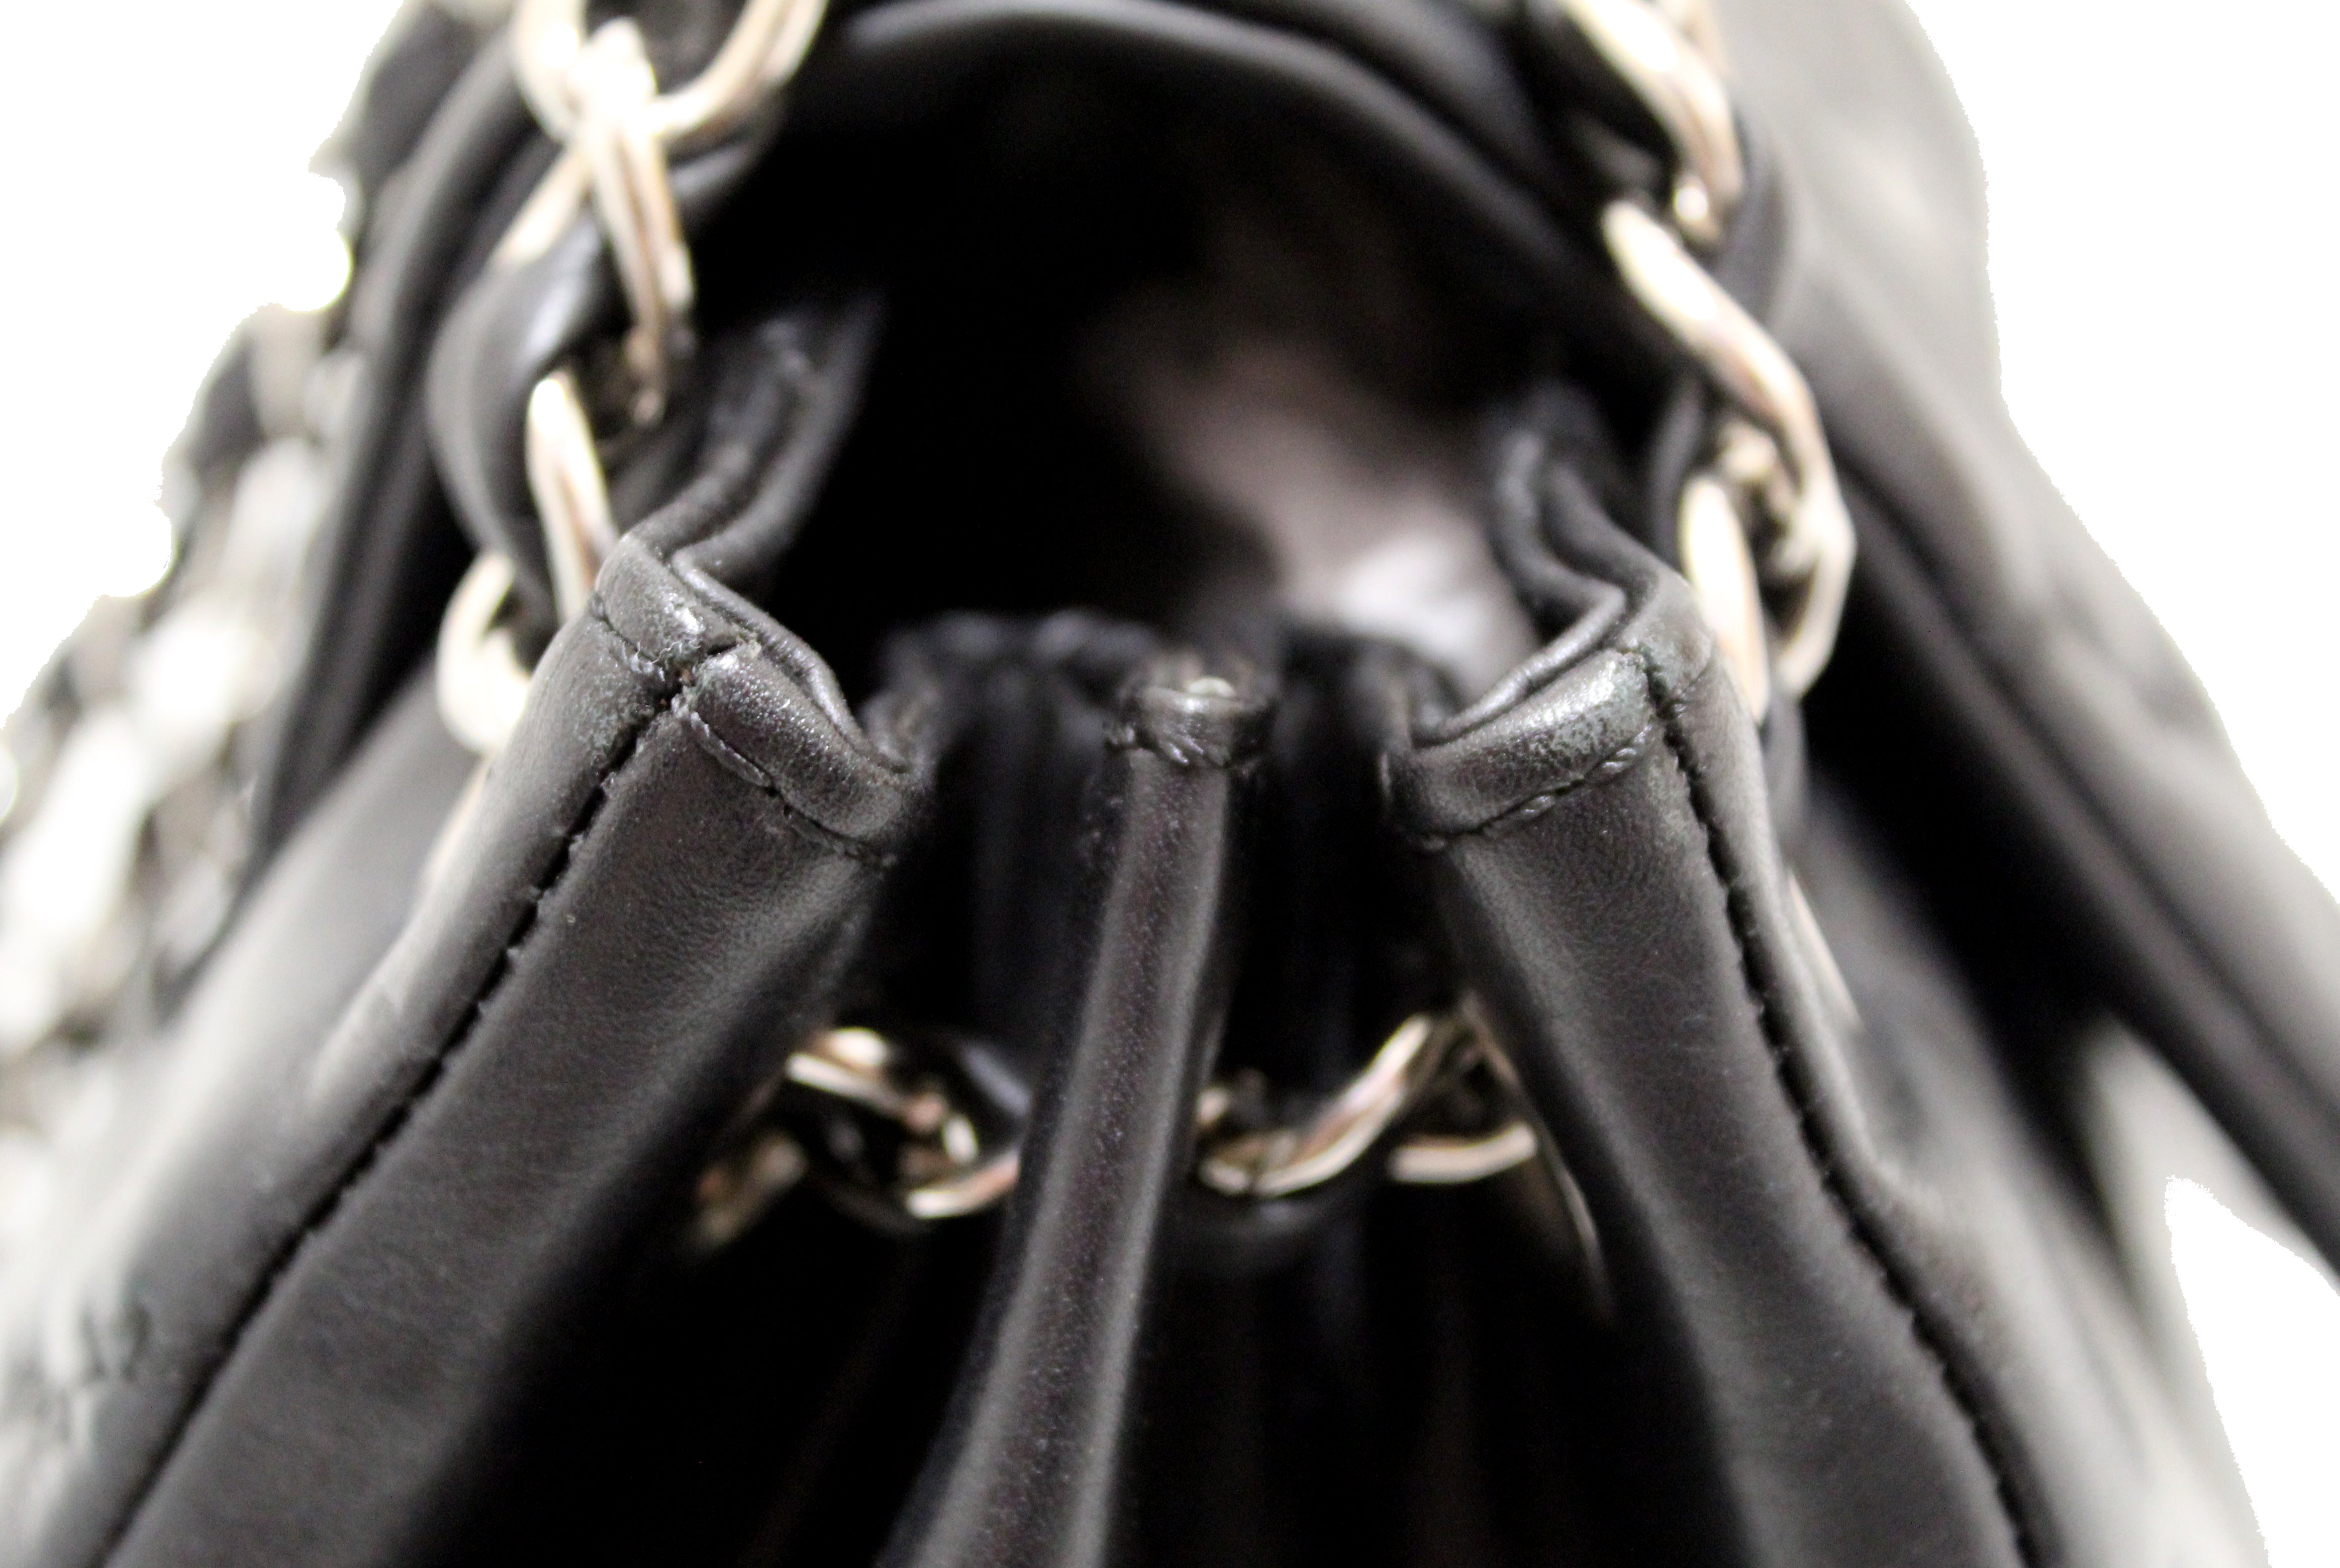 Authentic Chanel Black Calfskin Double Stitch Large Hamptons Flap Bag Black